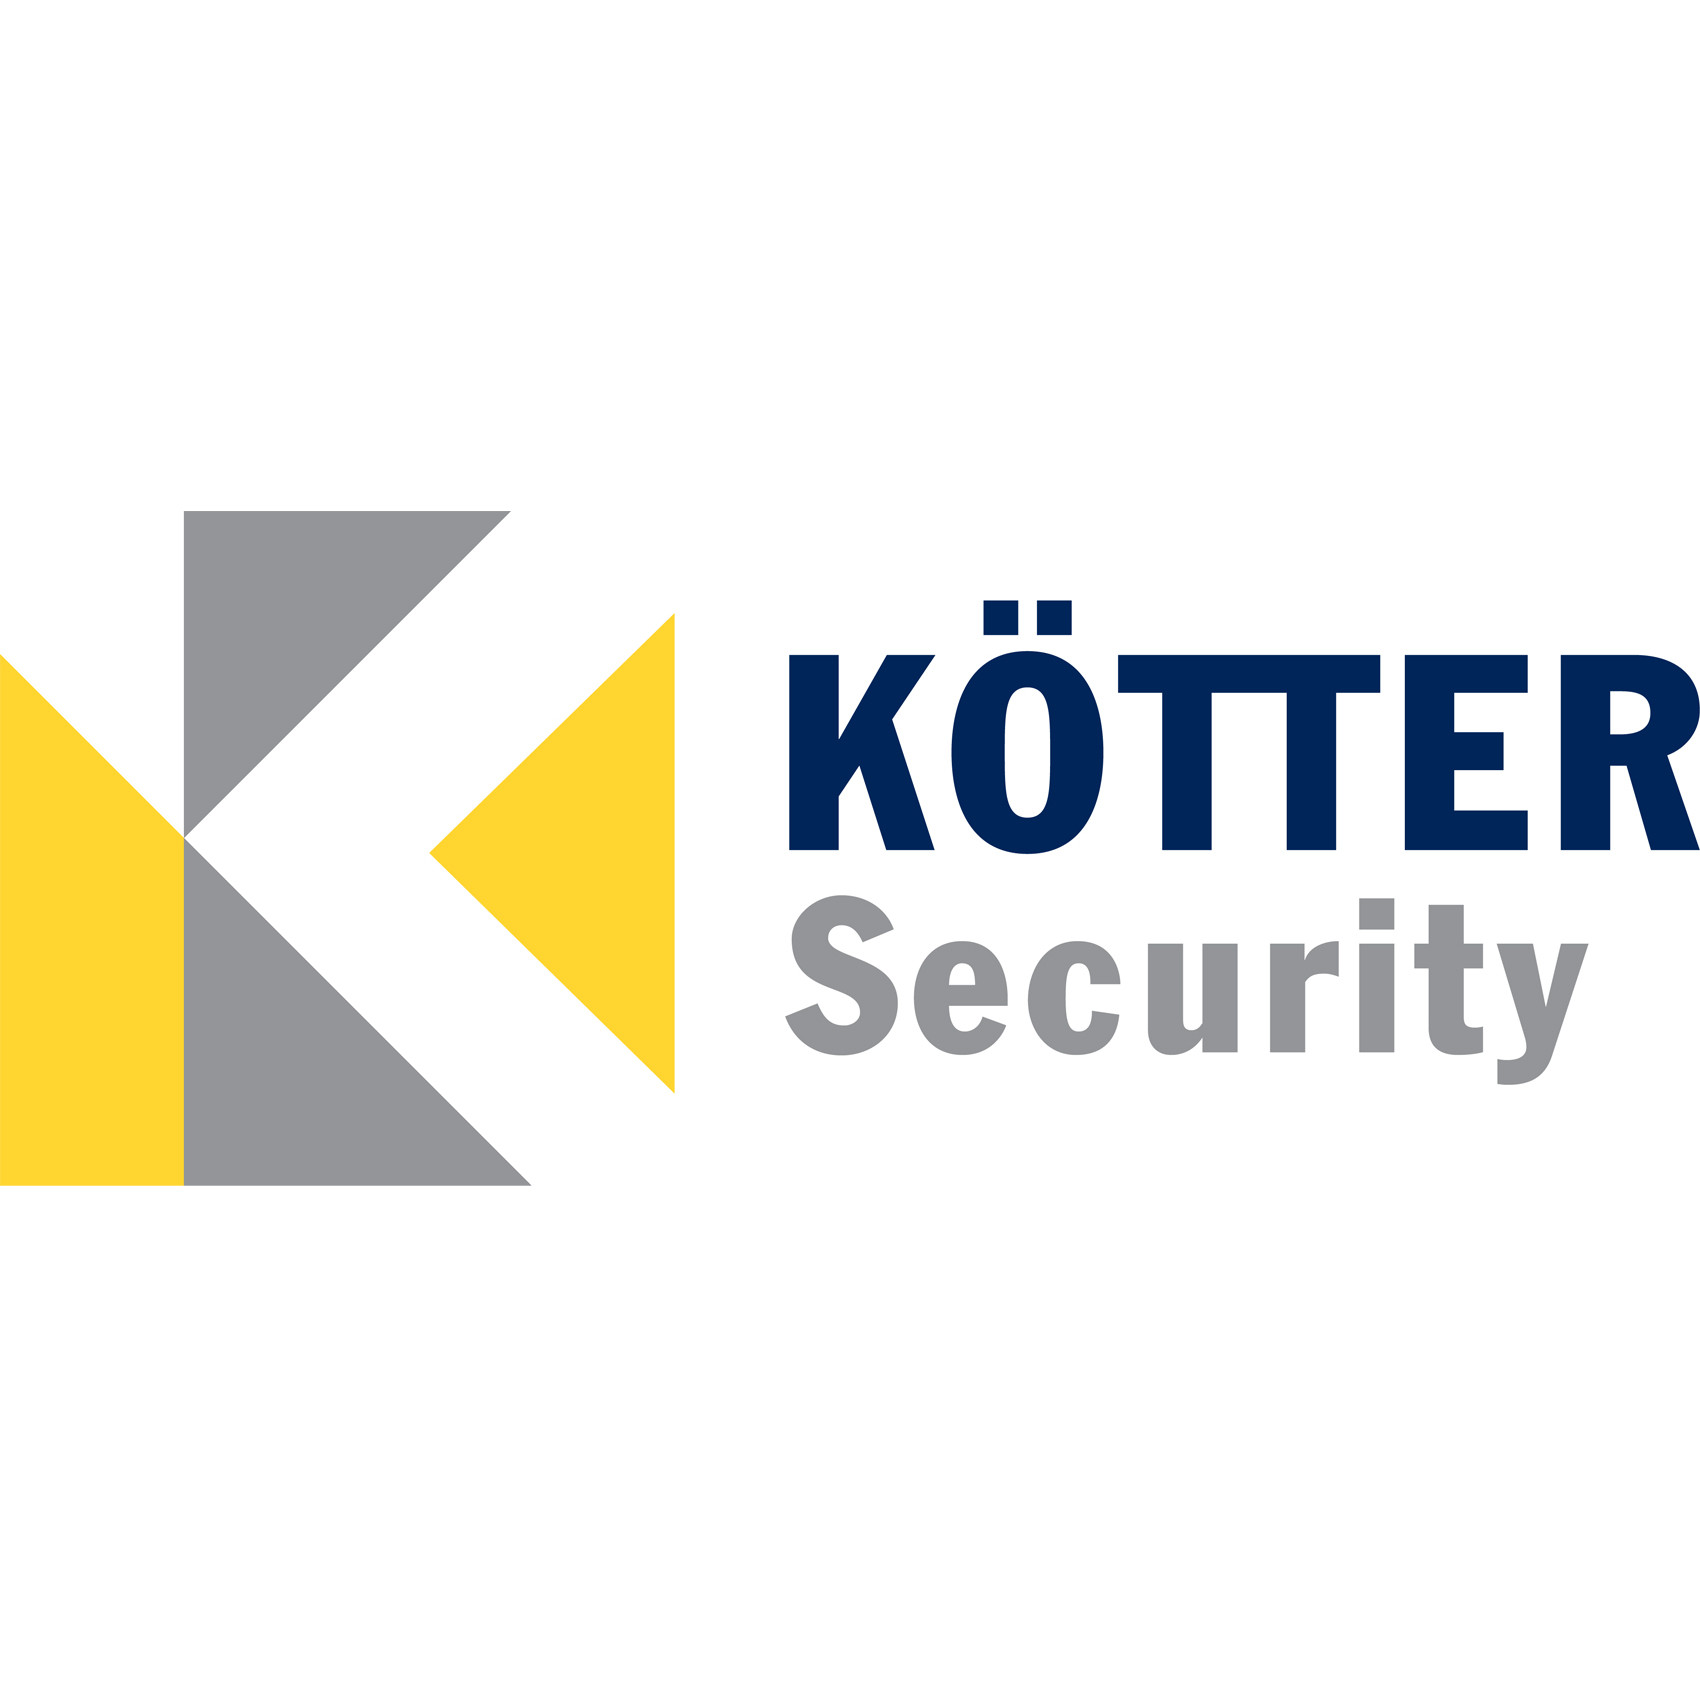 KÖTTER SE & Co. KG Security